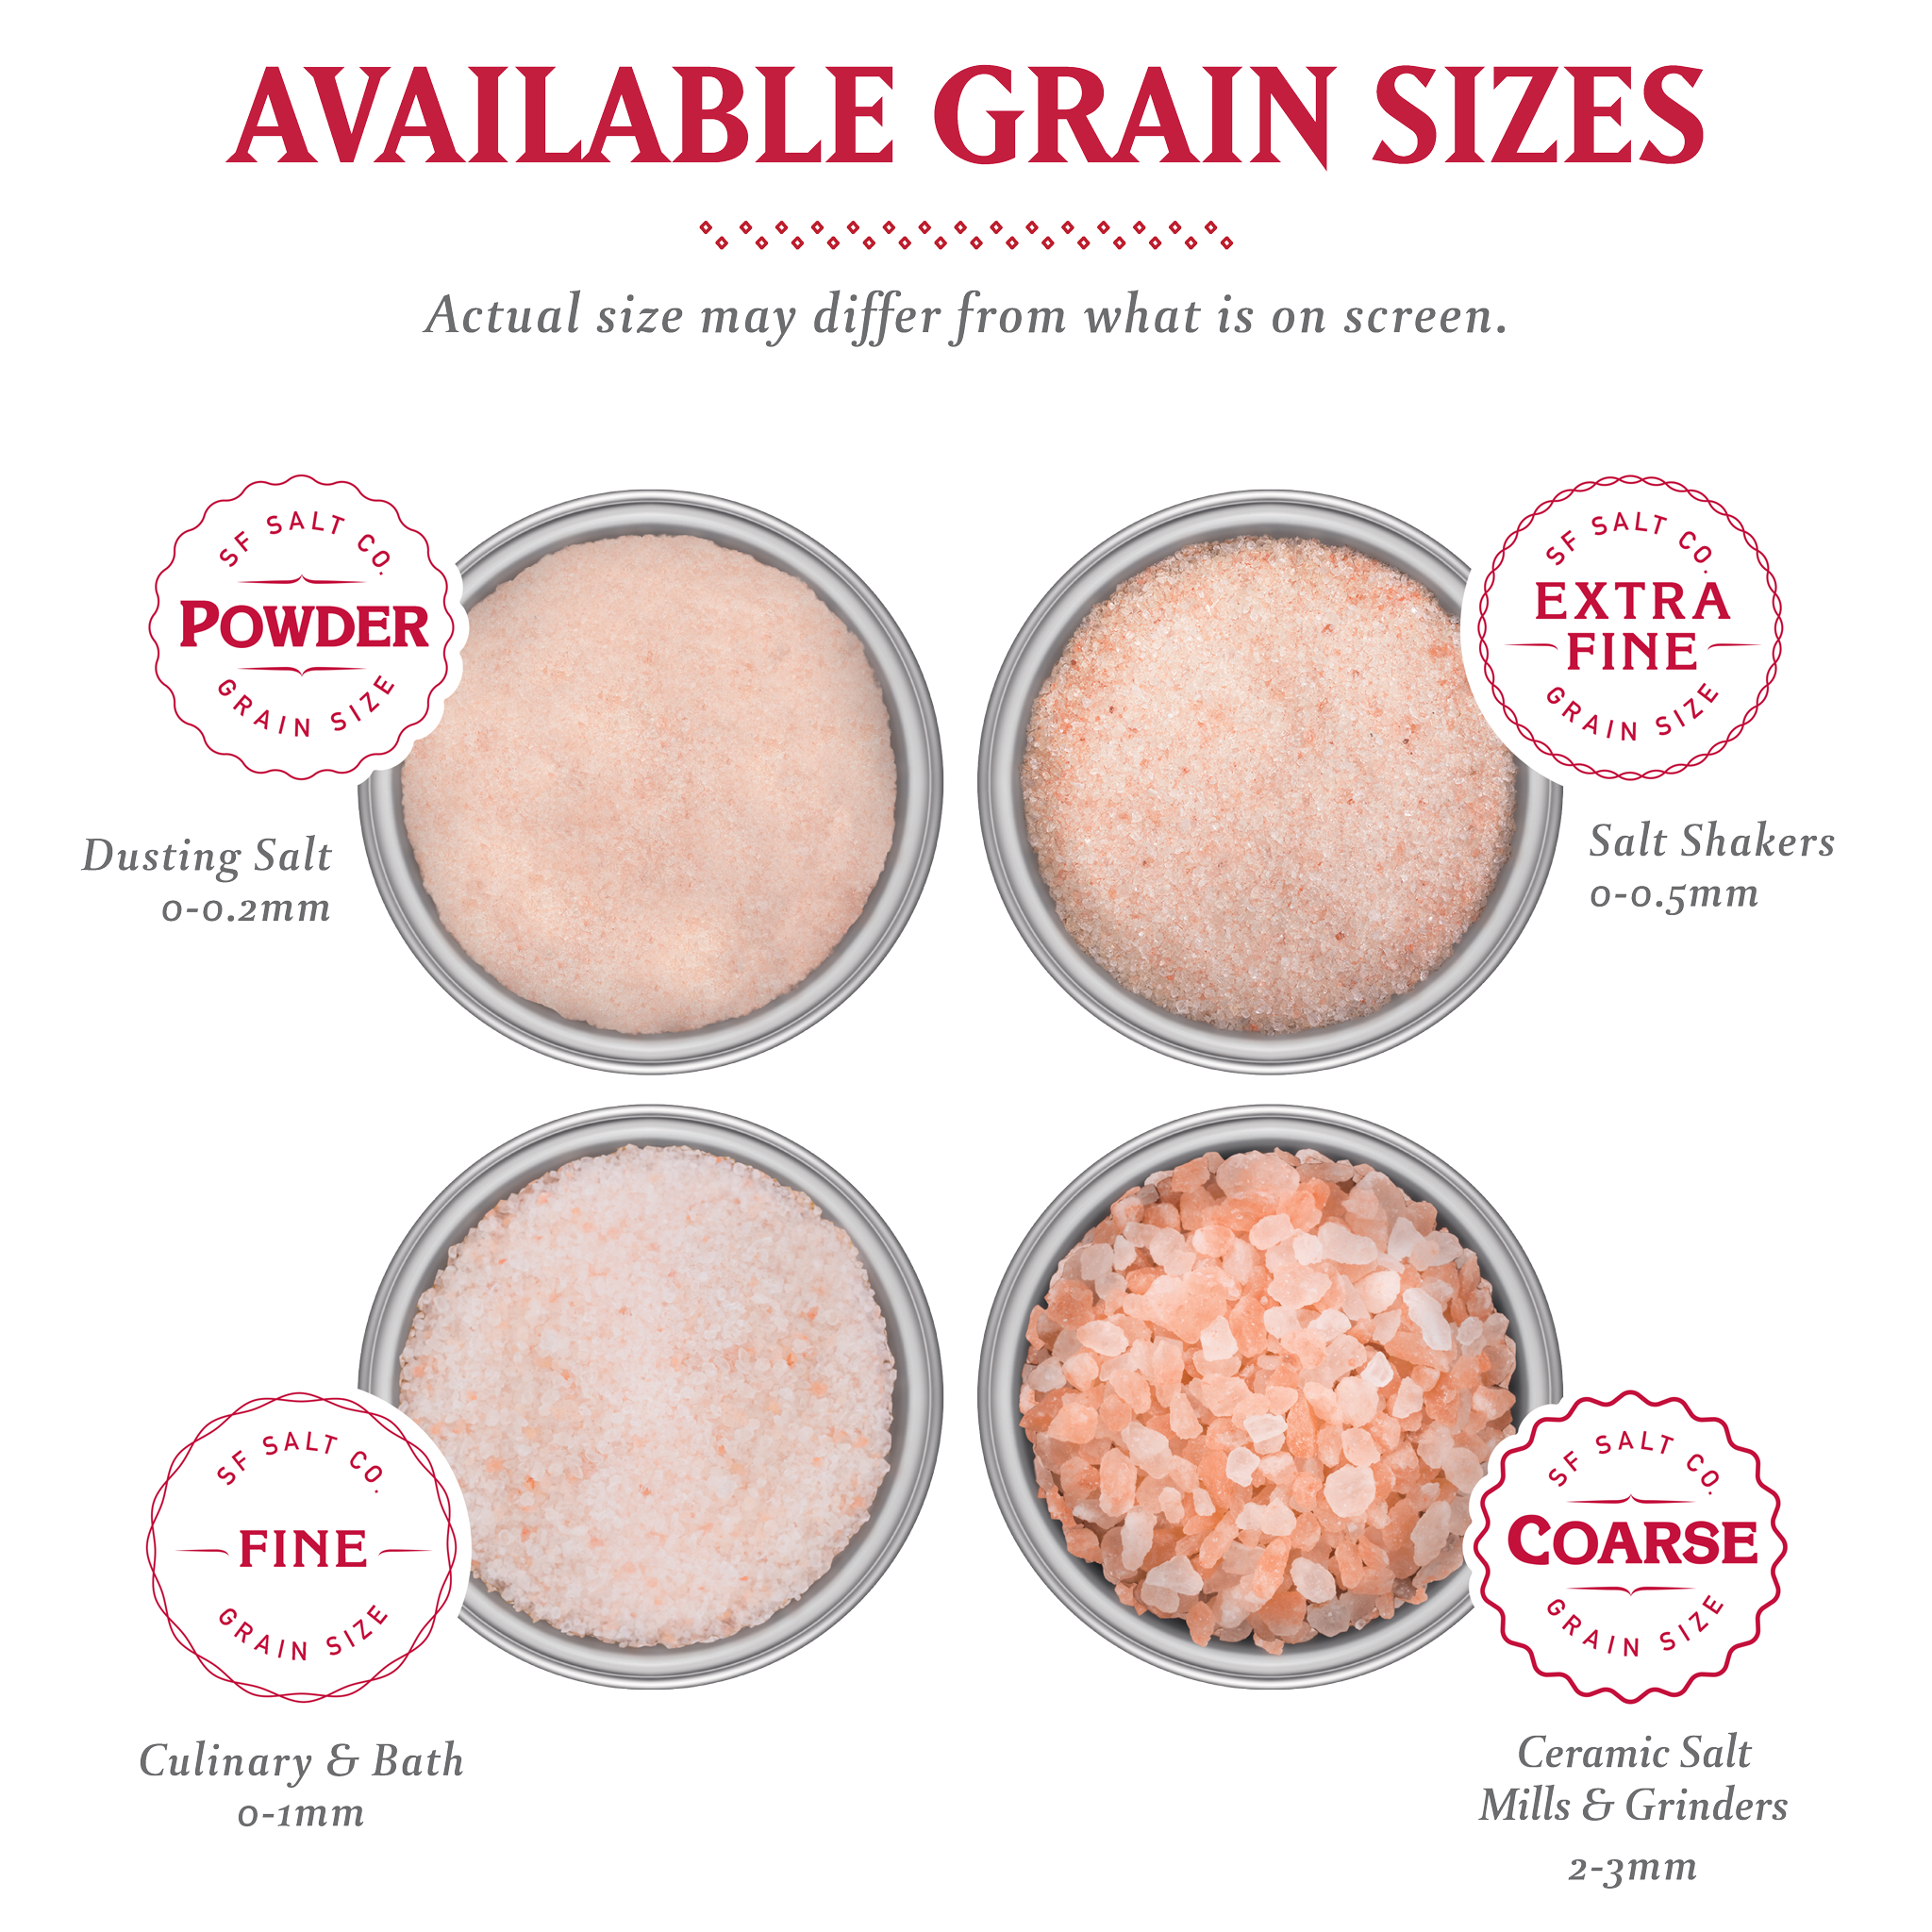 Available Grain Sizes Comparison